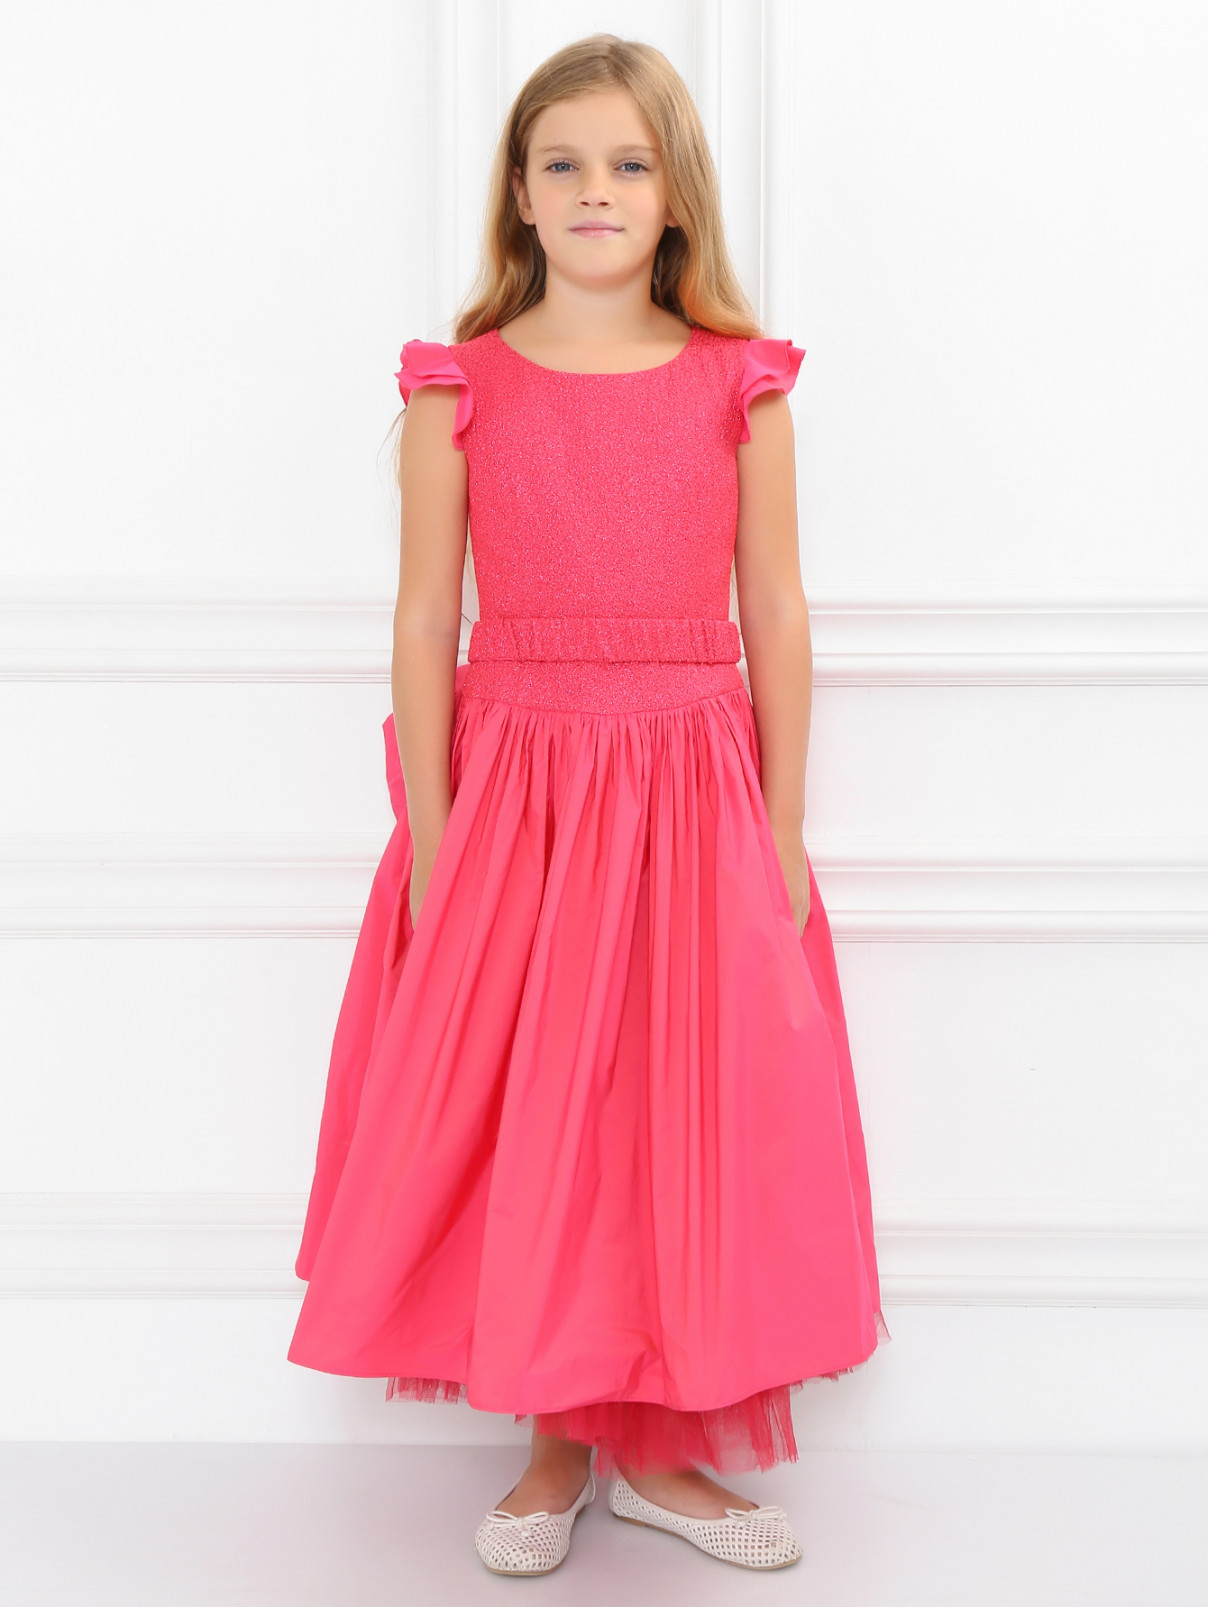 Платье с пышной юбкой и поясом-бант Junior Gaultier  –  Модель Общий вид  – Цвет:  Розовый